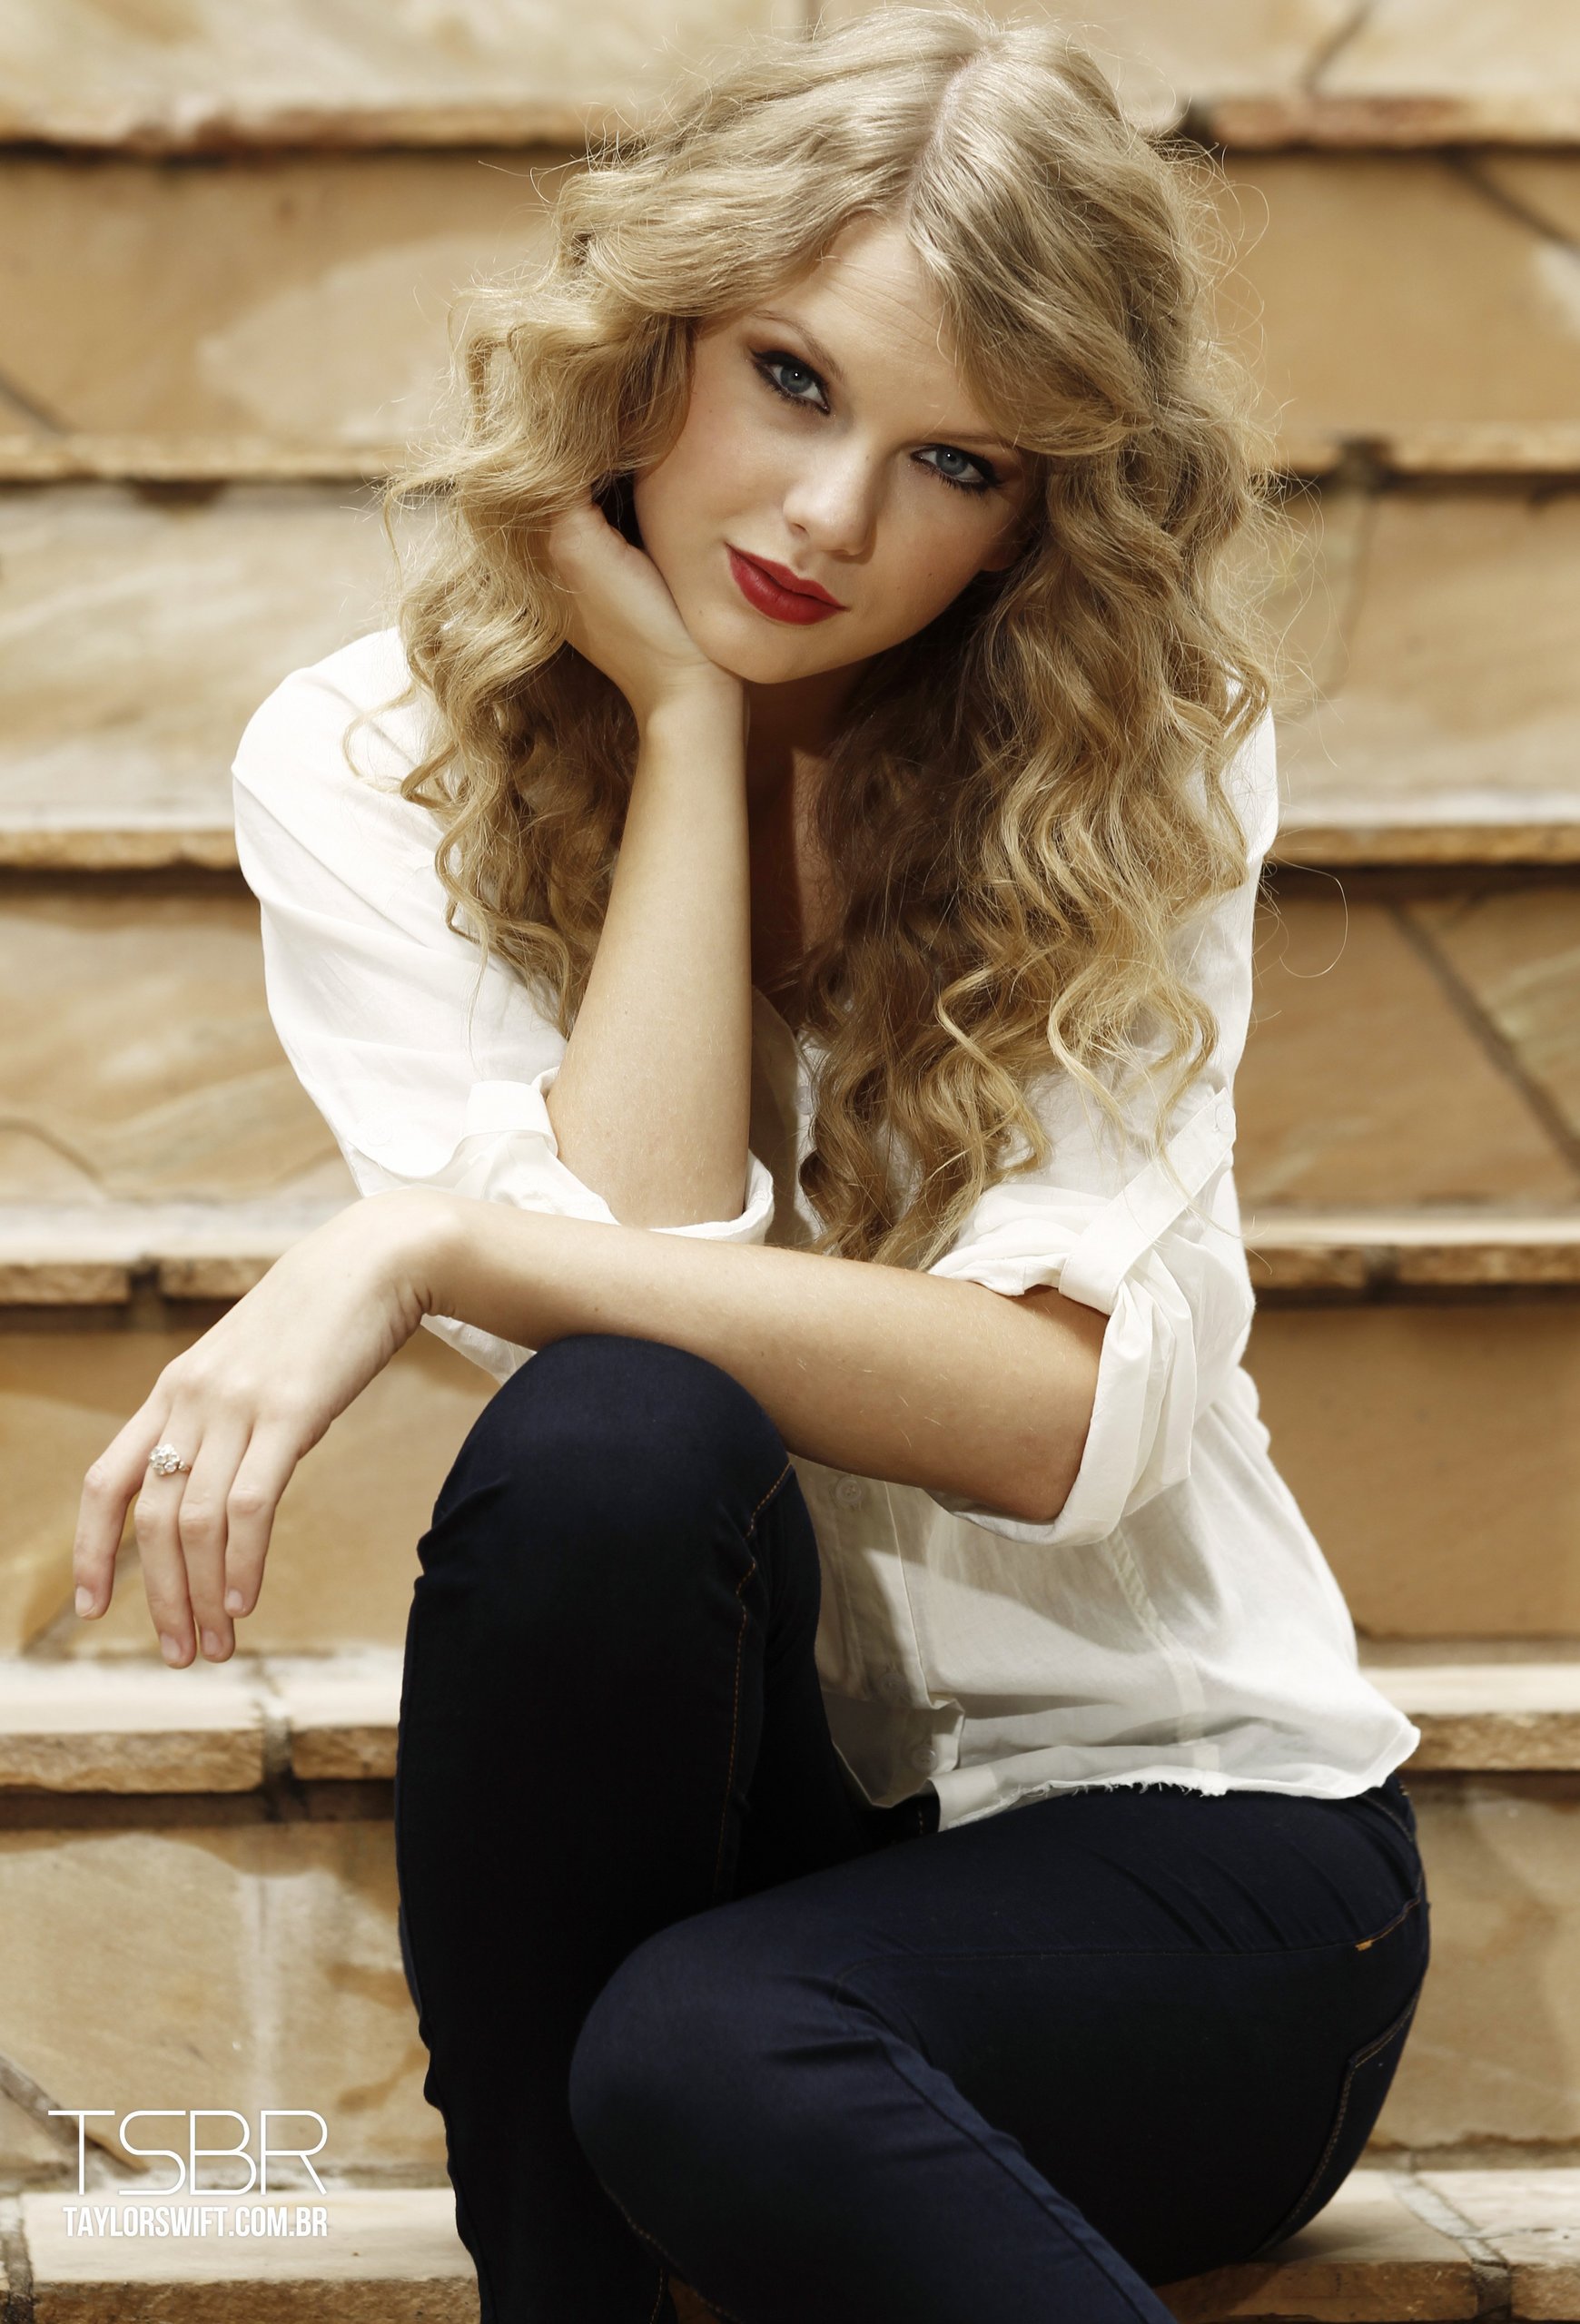 Taylor Swift website